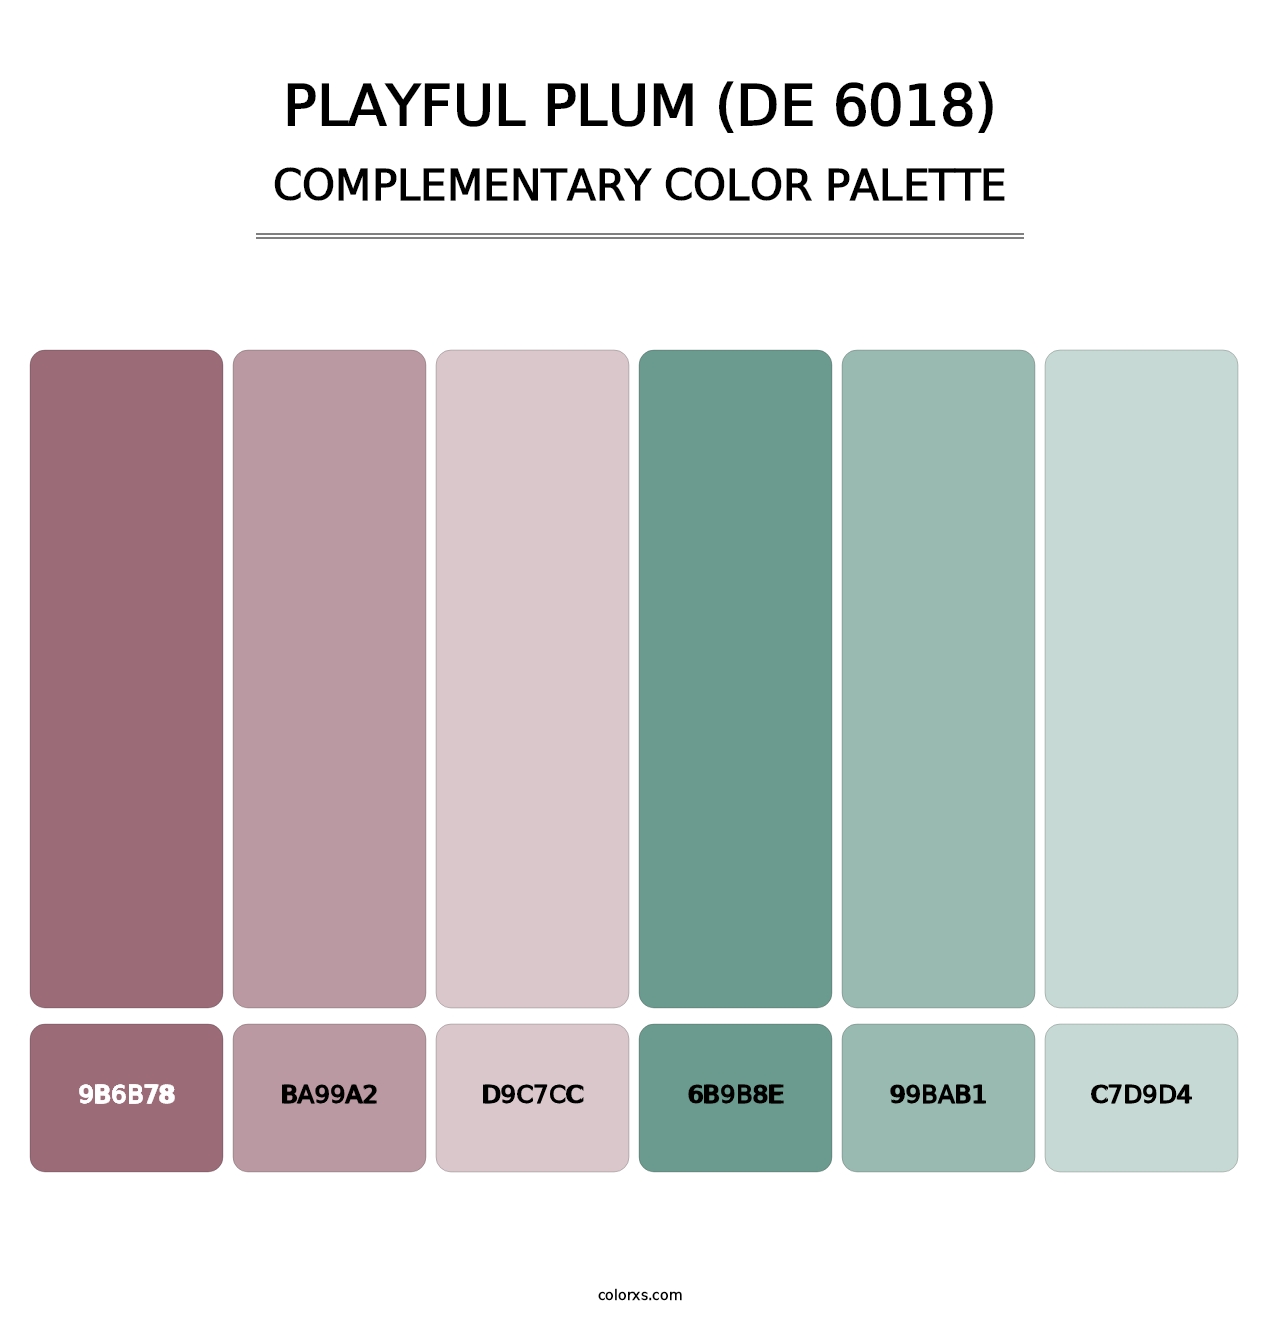 Playful Plum (DE 6018) - Complementary Color Palette